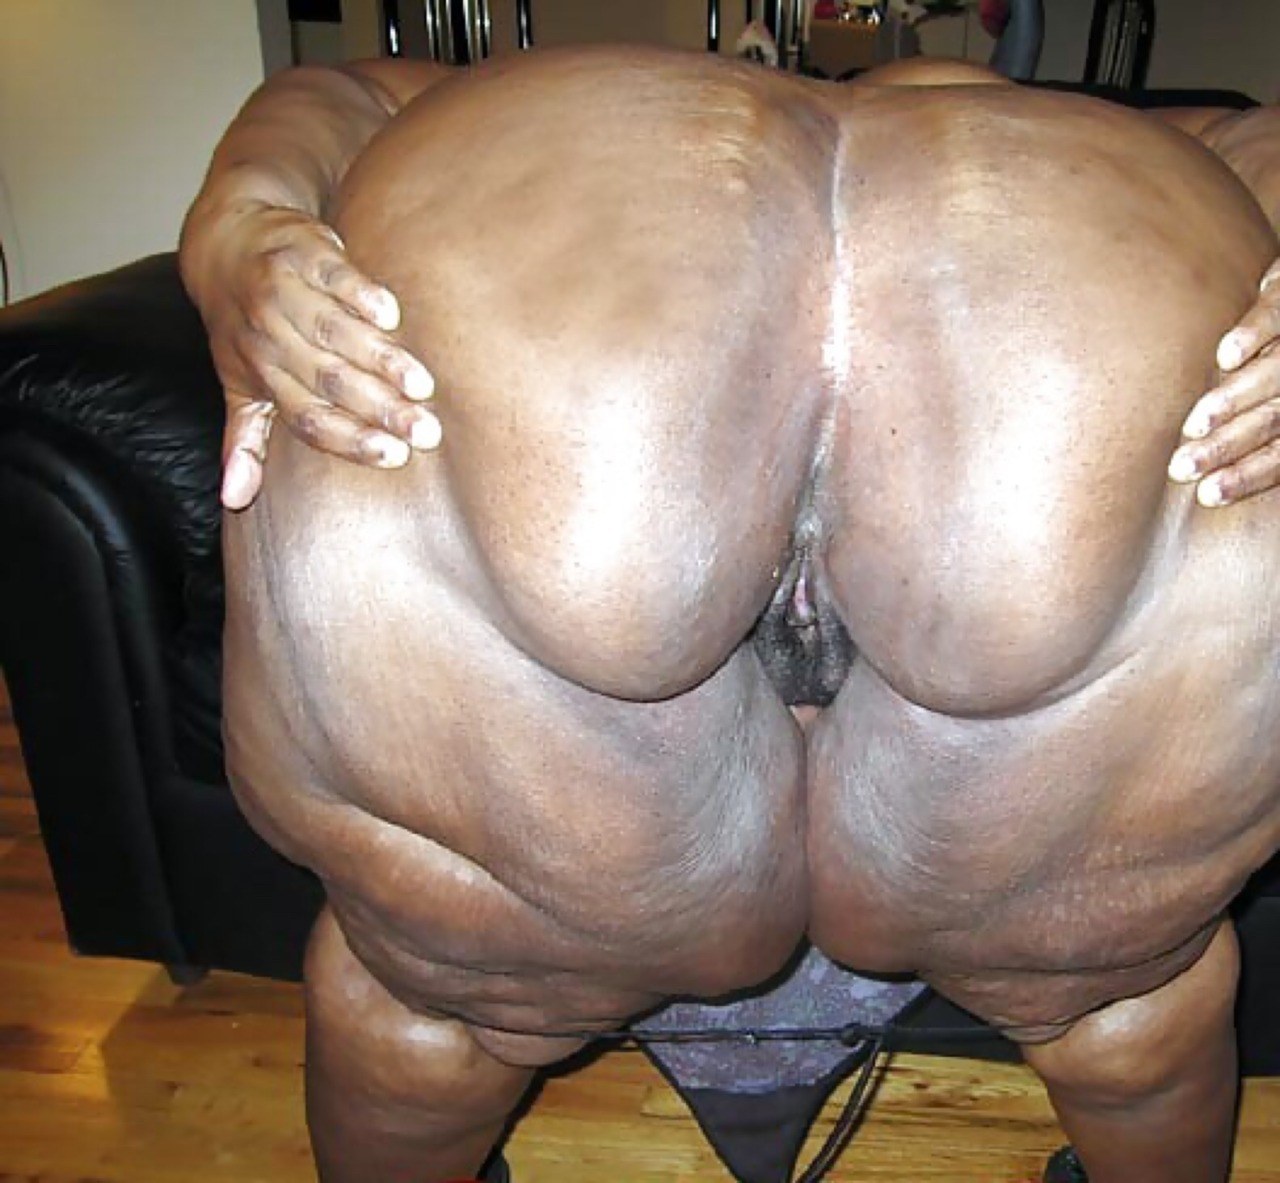 Ebony giant ass pics ssbbw